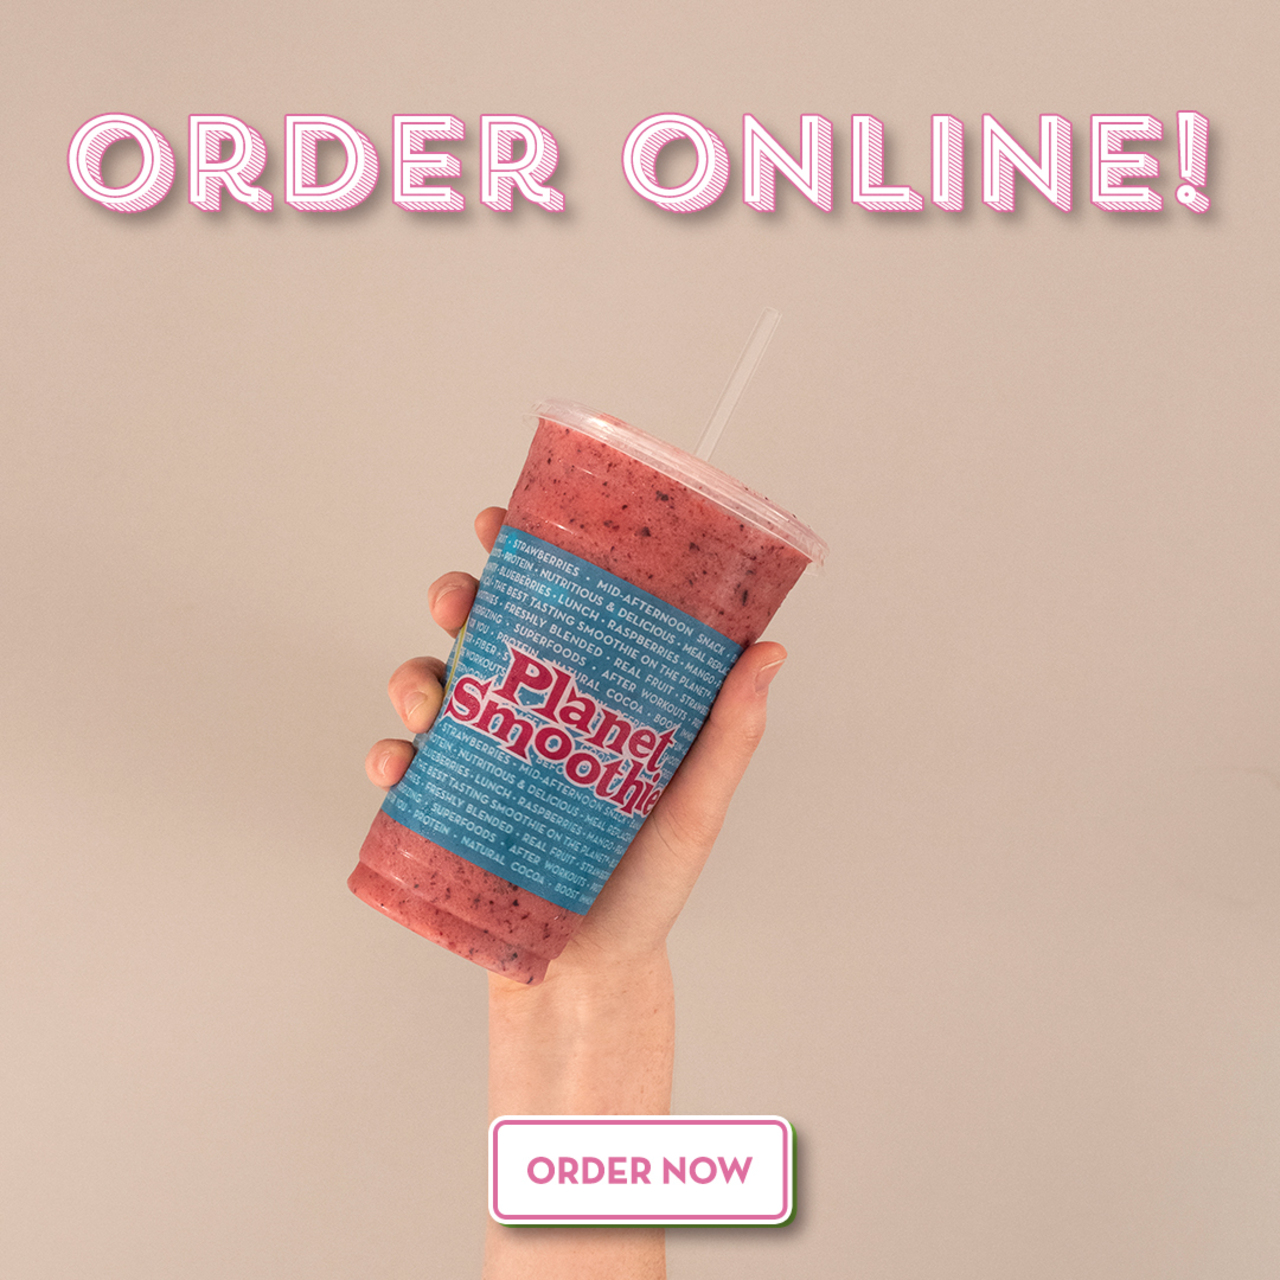 Order Online! Order Now